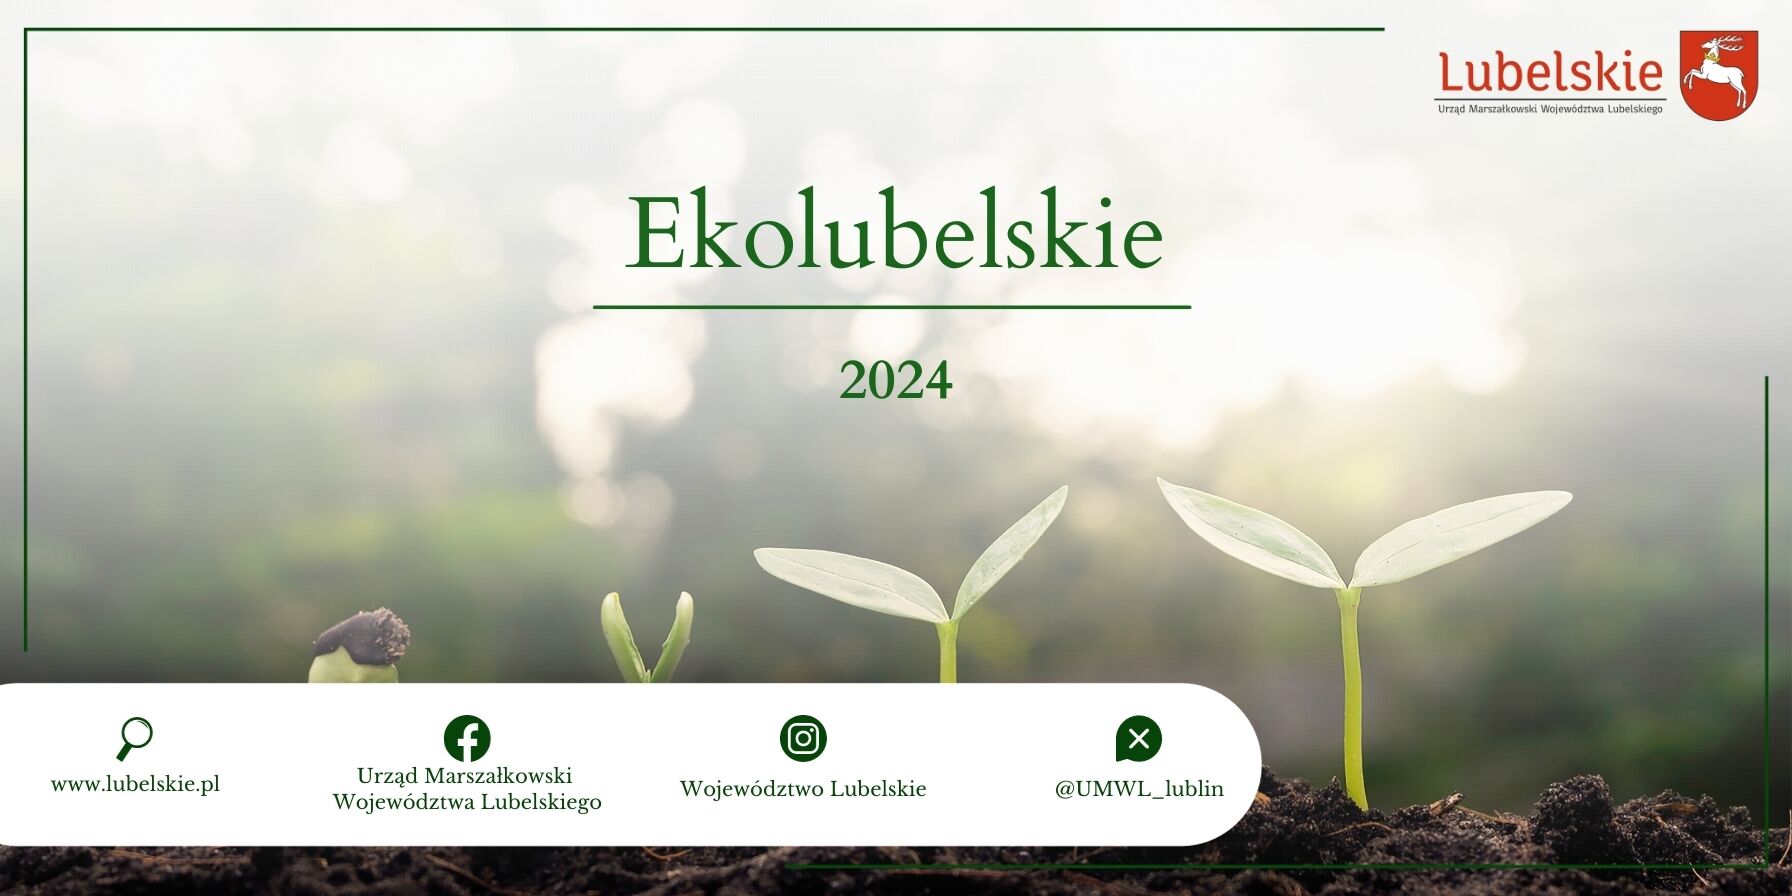 Baner promocyjny "EkoLubelskie 2024" z grafiką rosnących młodych roślin na tle rozmytego zielonego lasu. Zawiera logotypy i adresy internetowe.